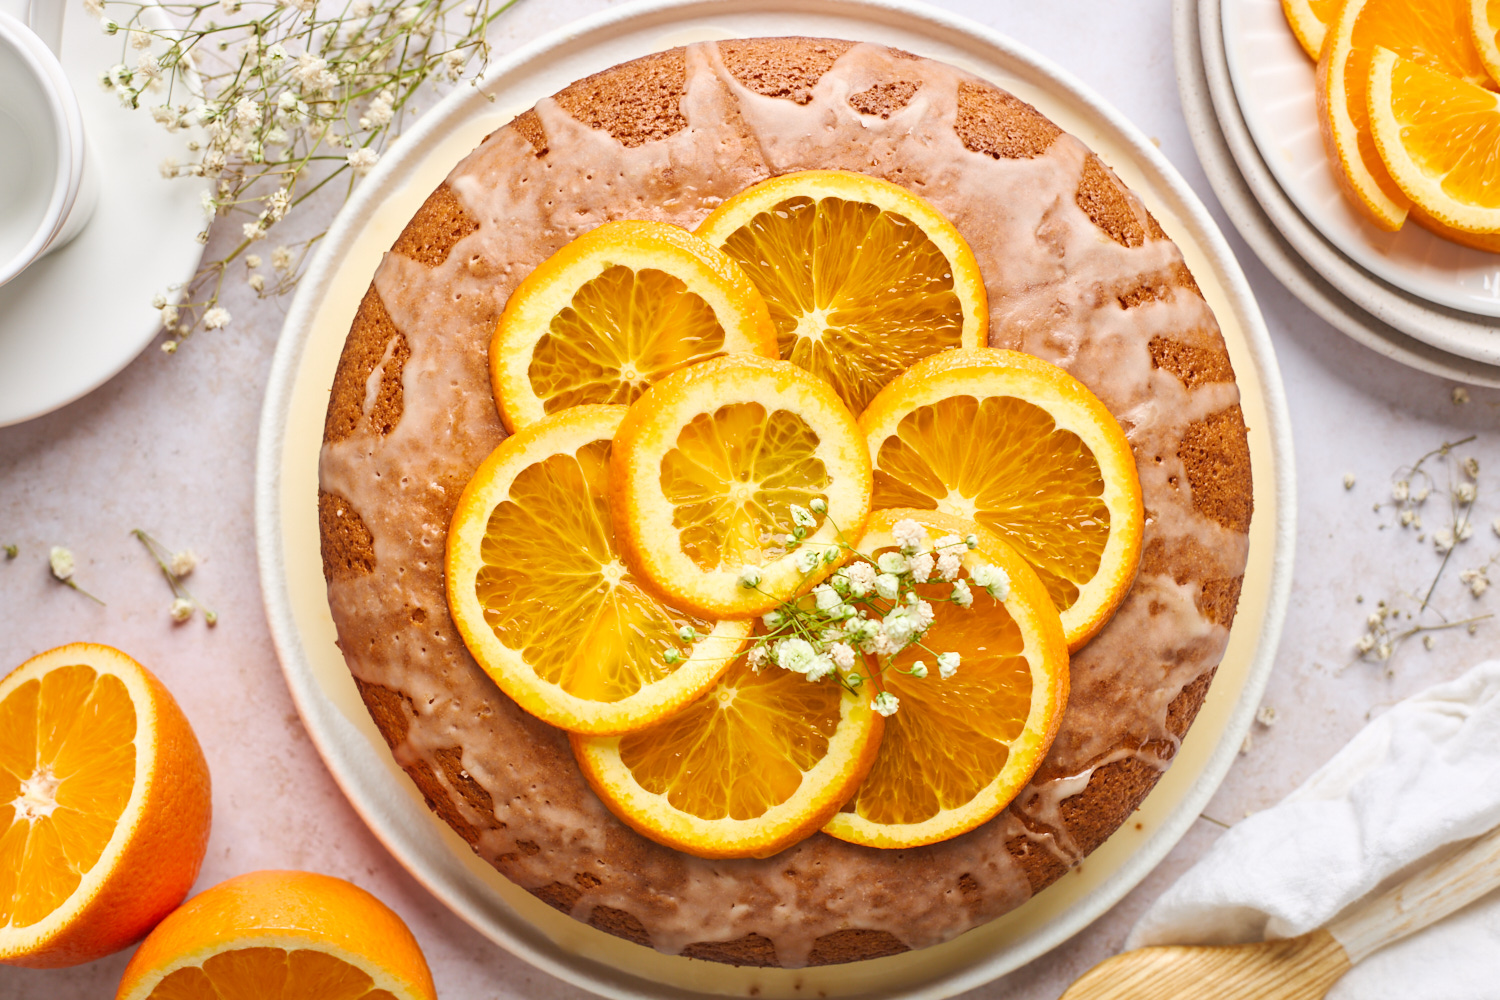 Florentine orange cake (Schiacciata alla fiorentina) - Caroline's Cooking